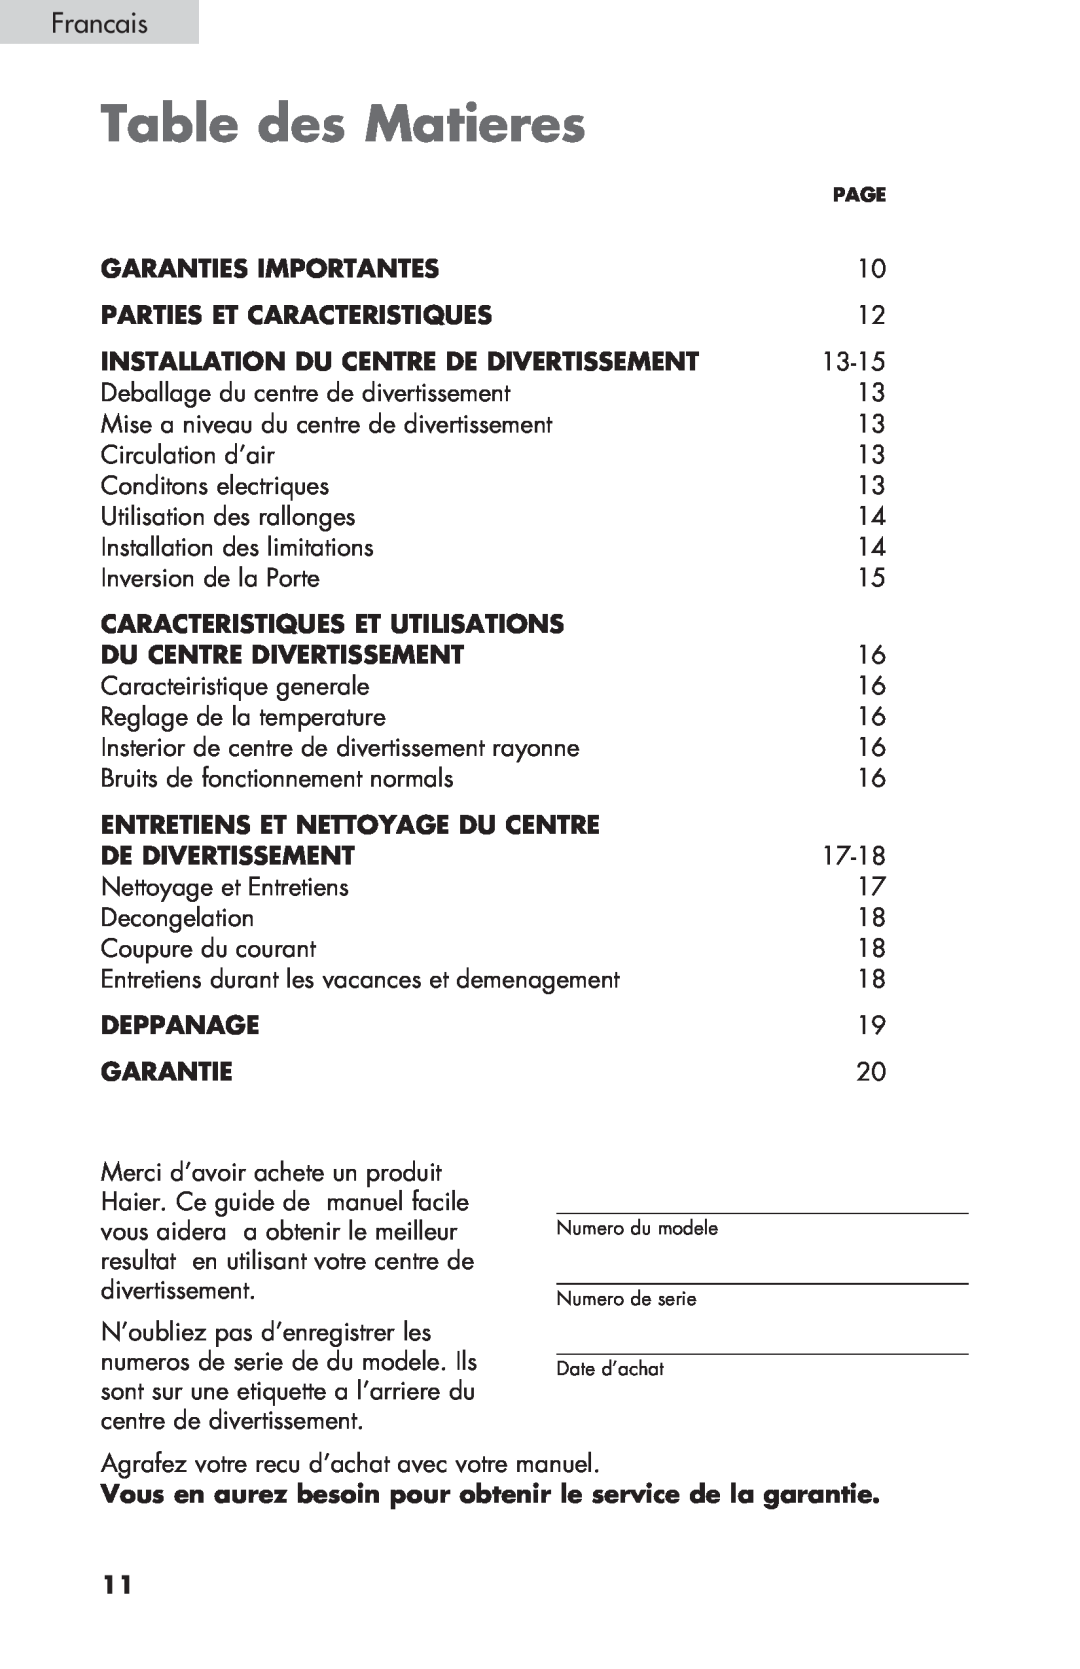 Haier HBCN05FVS Table des Matieres, Garanties Importantes, Parties Et Caracteristiques, Caracteristiques Et Utilisations 